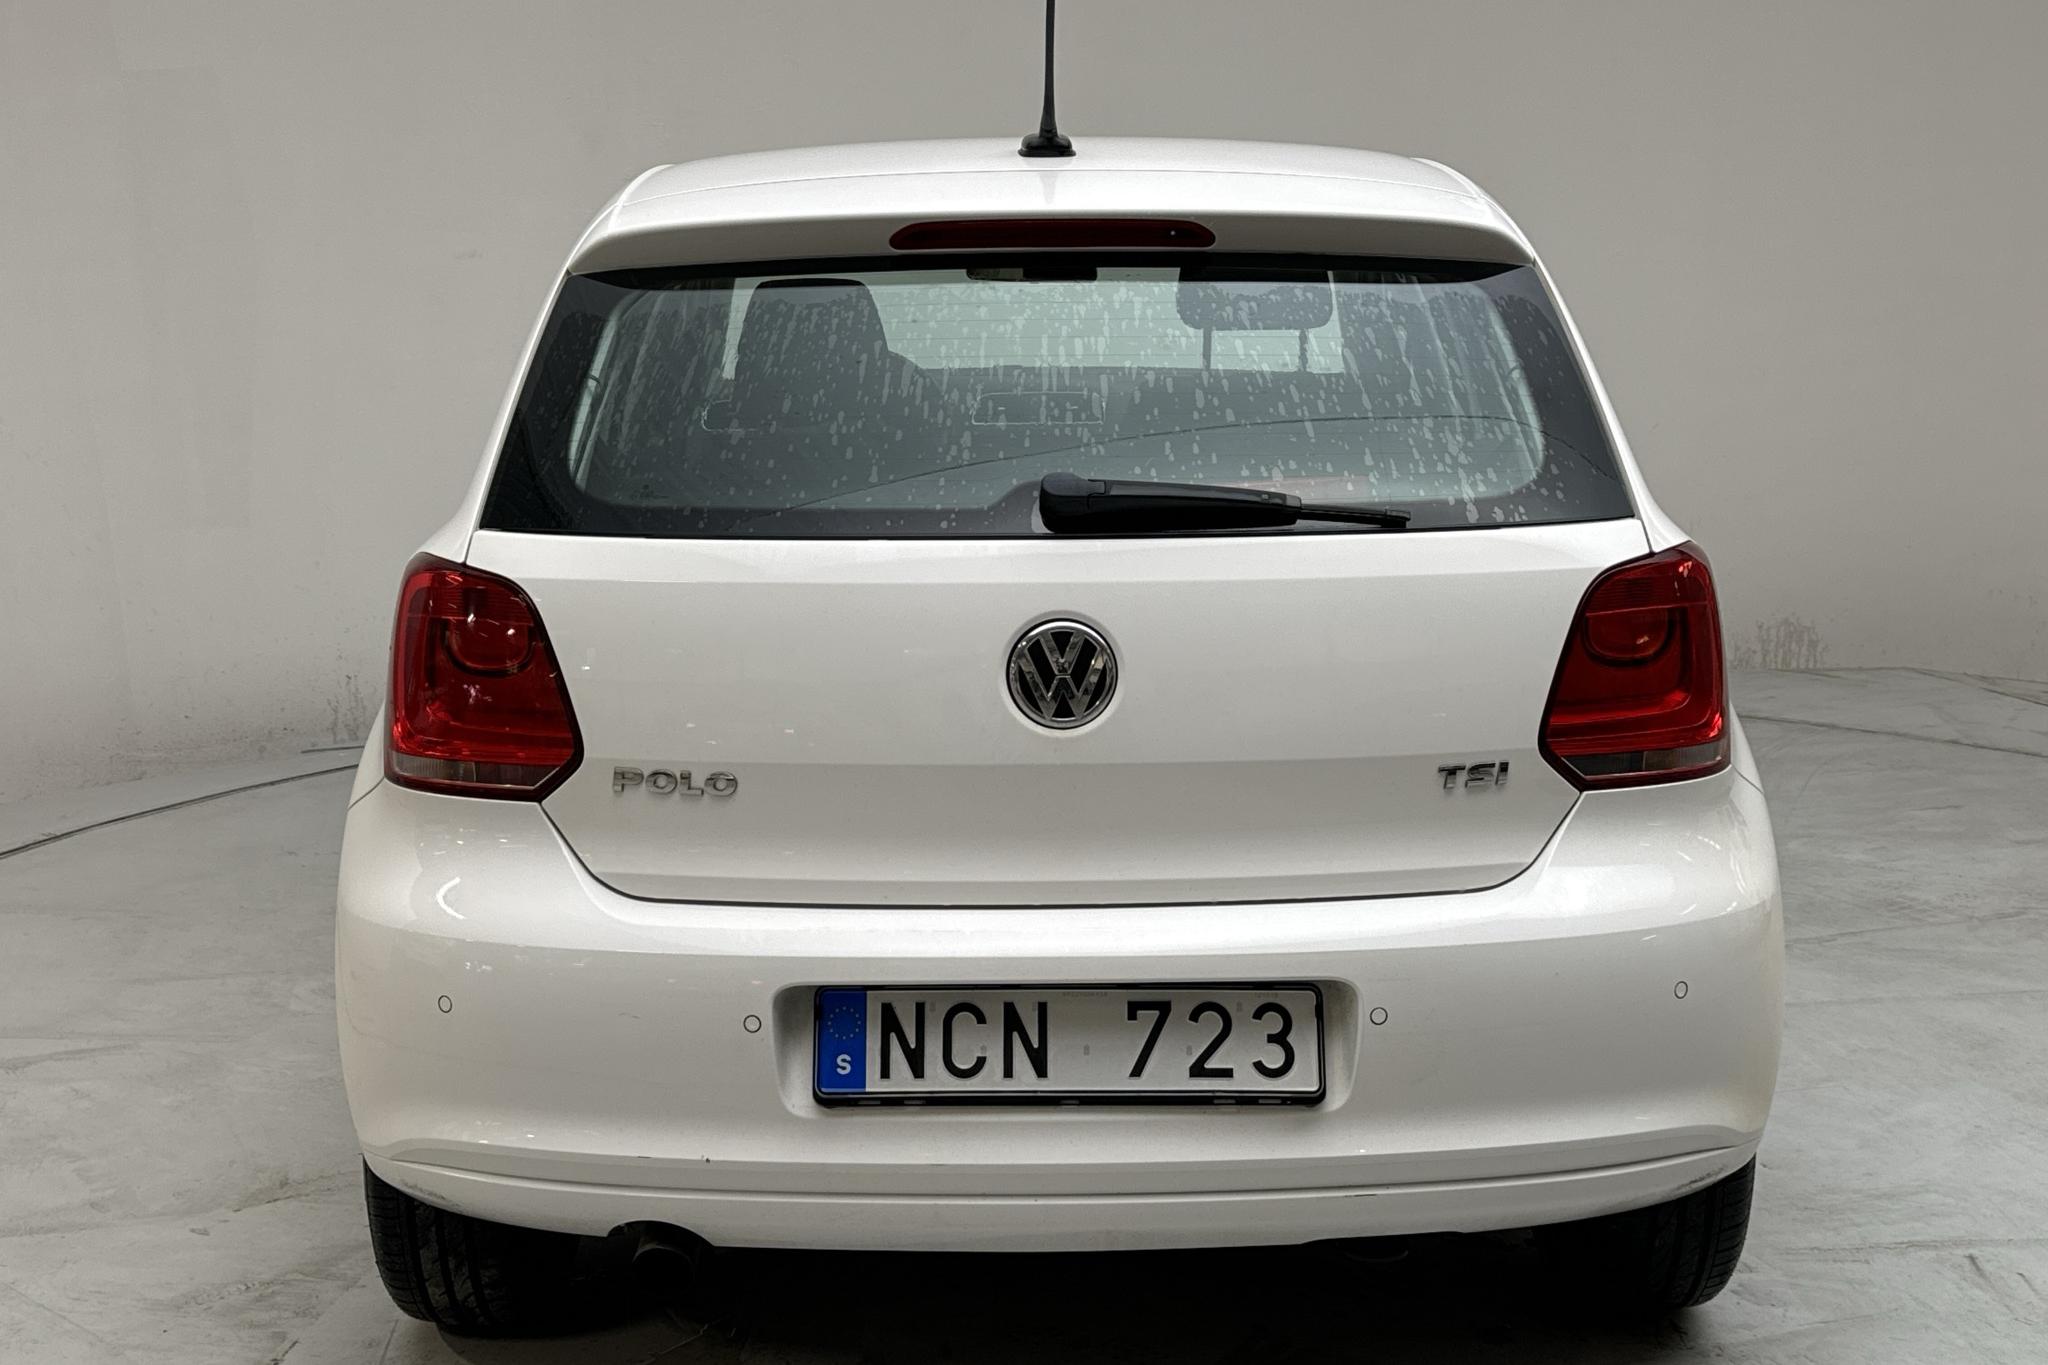 VW Polo 1.2 TSI 5dr (90hk) - 142 270 km - Manual - white - 2013